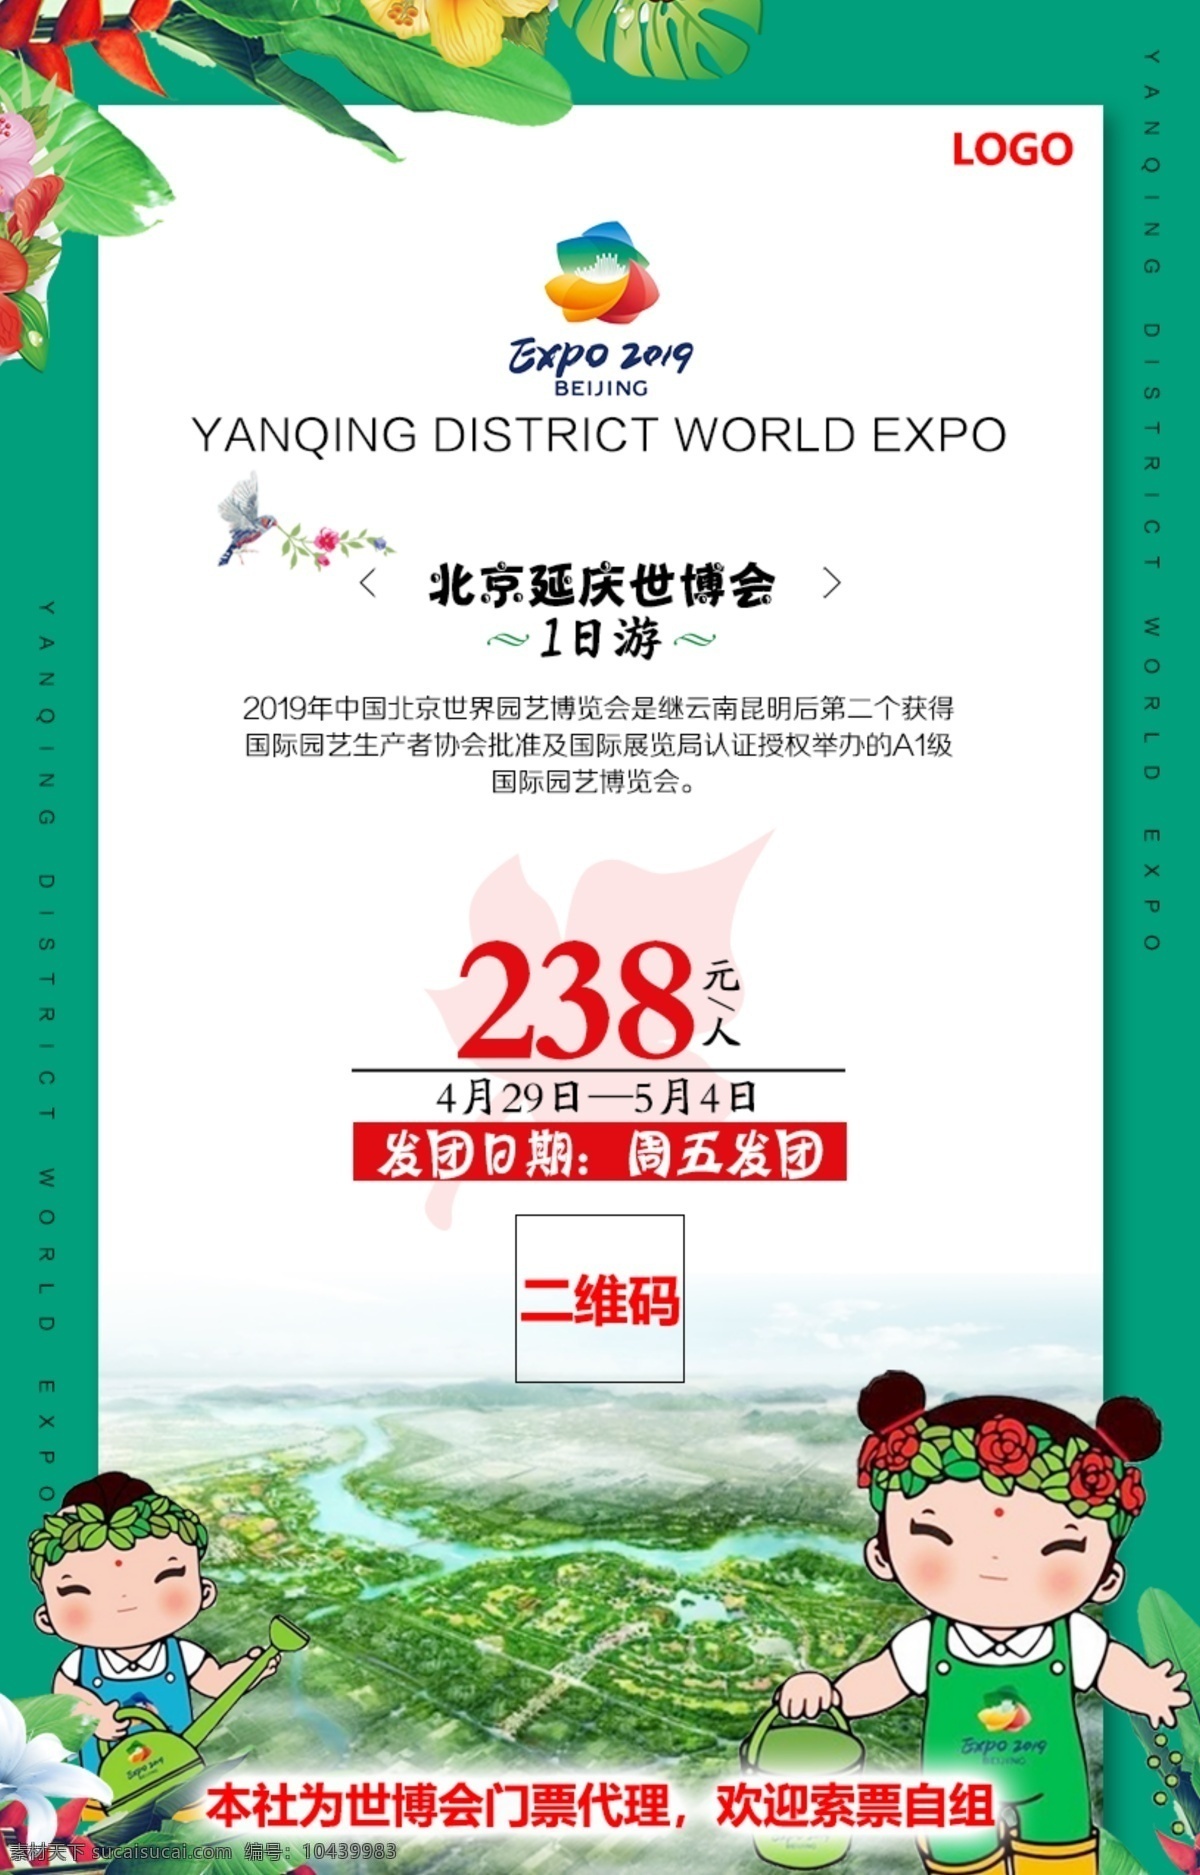 北京世园会 世园会 园艺博览会 绿色海报 旅游 海报宣传页